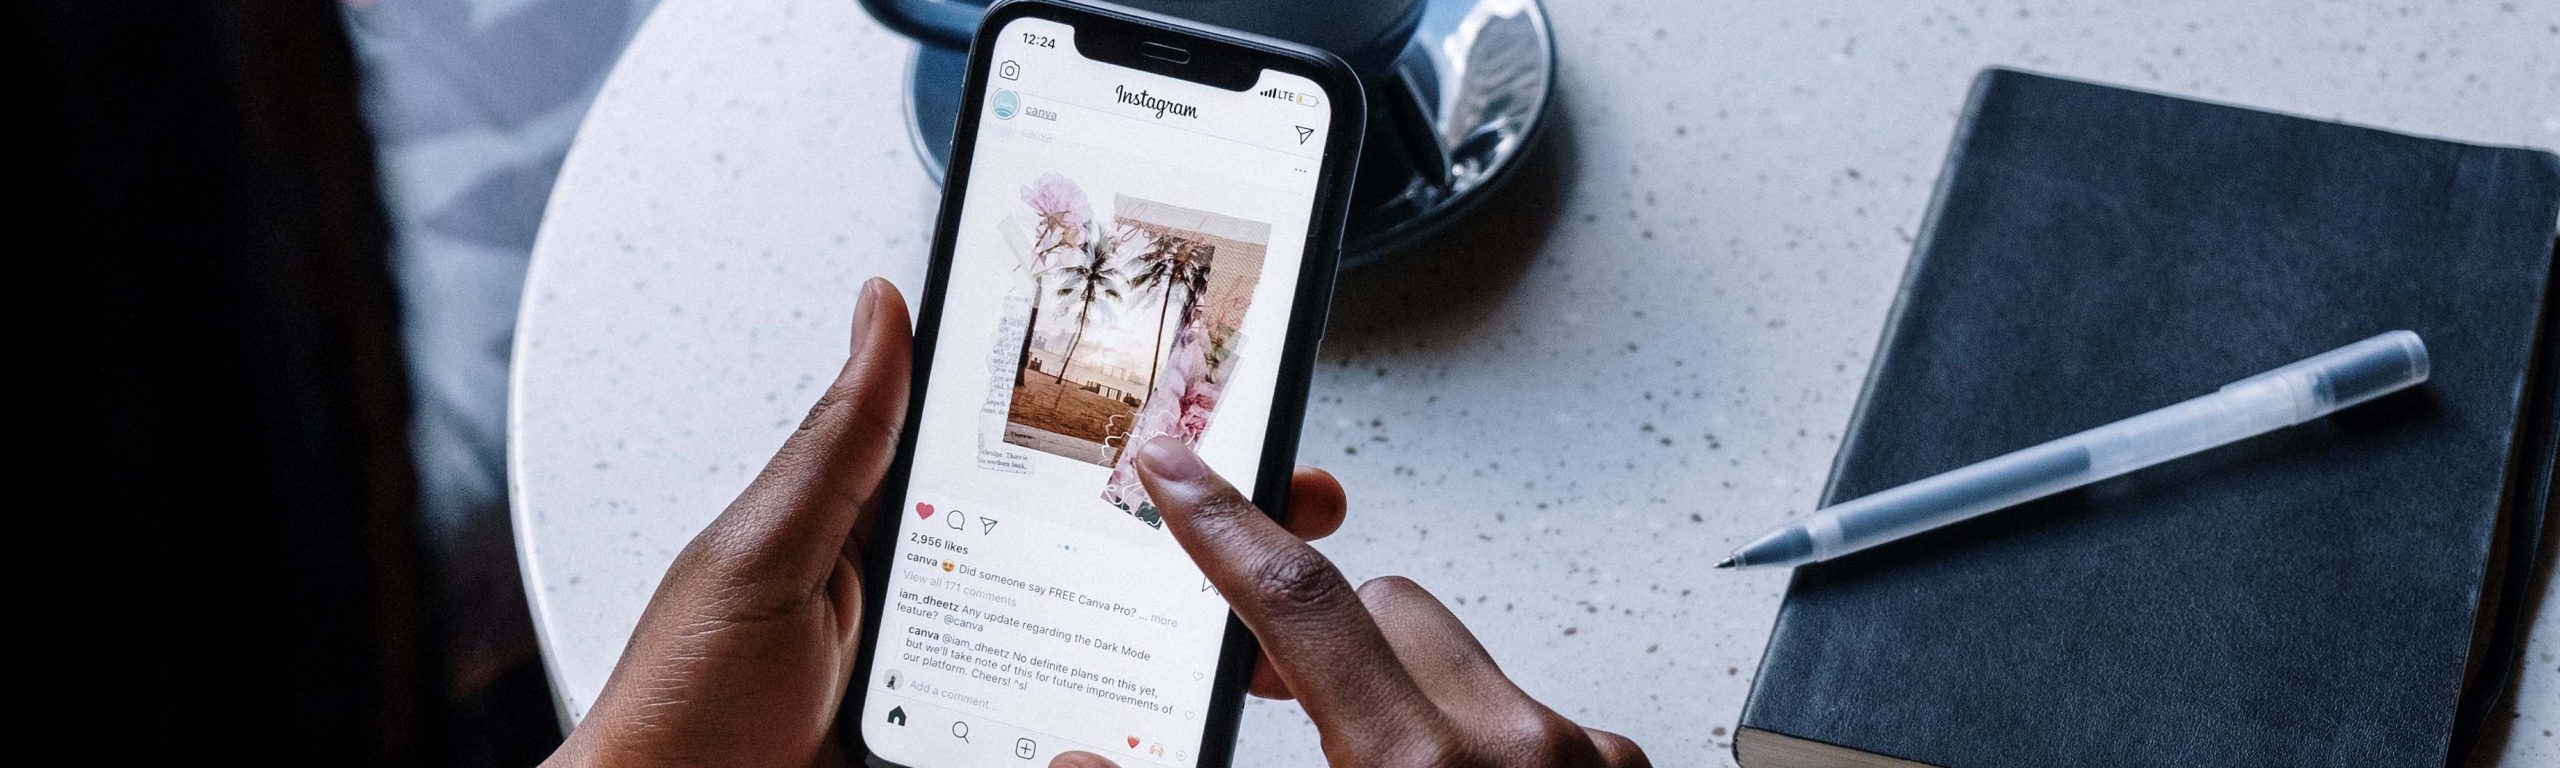 Instagram fa marcia indietro: nel 2022 potrebbe essere ripristinato il feed cronologico